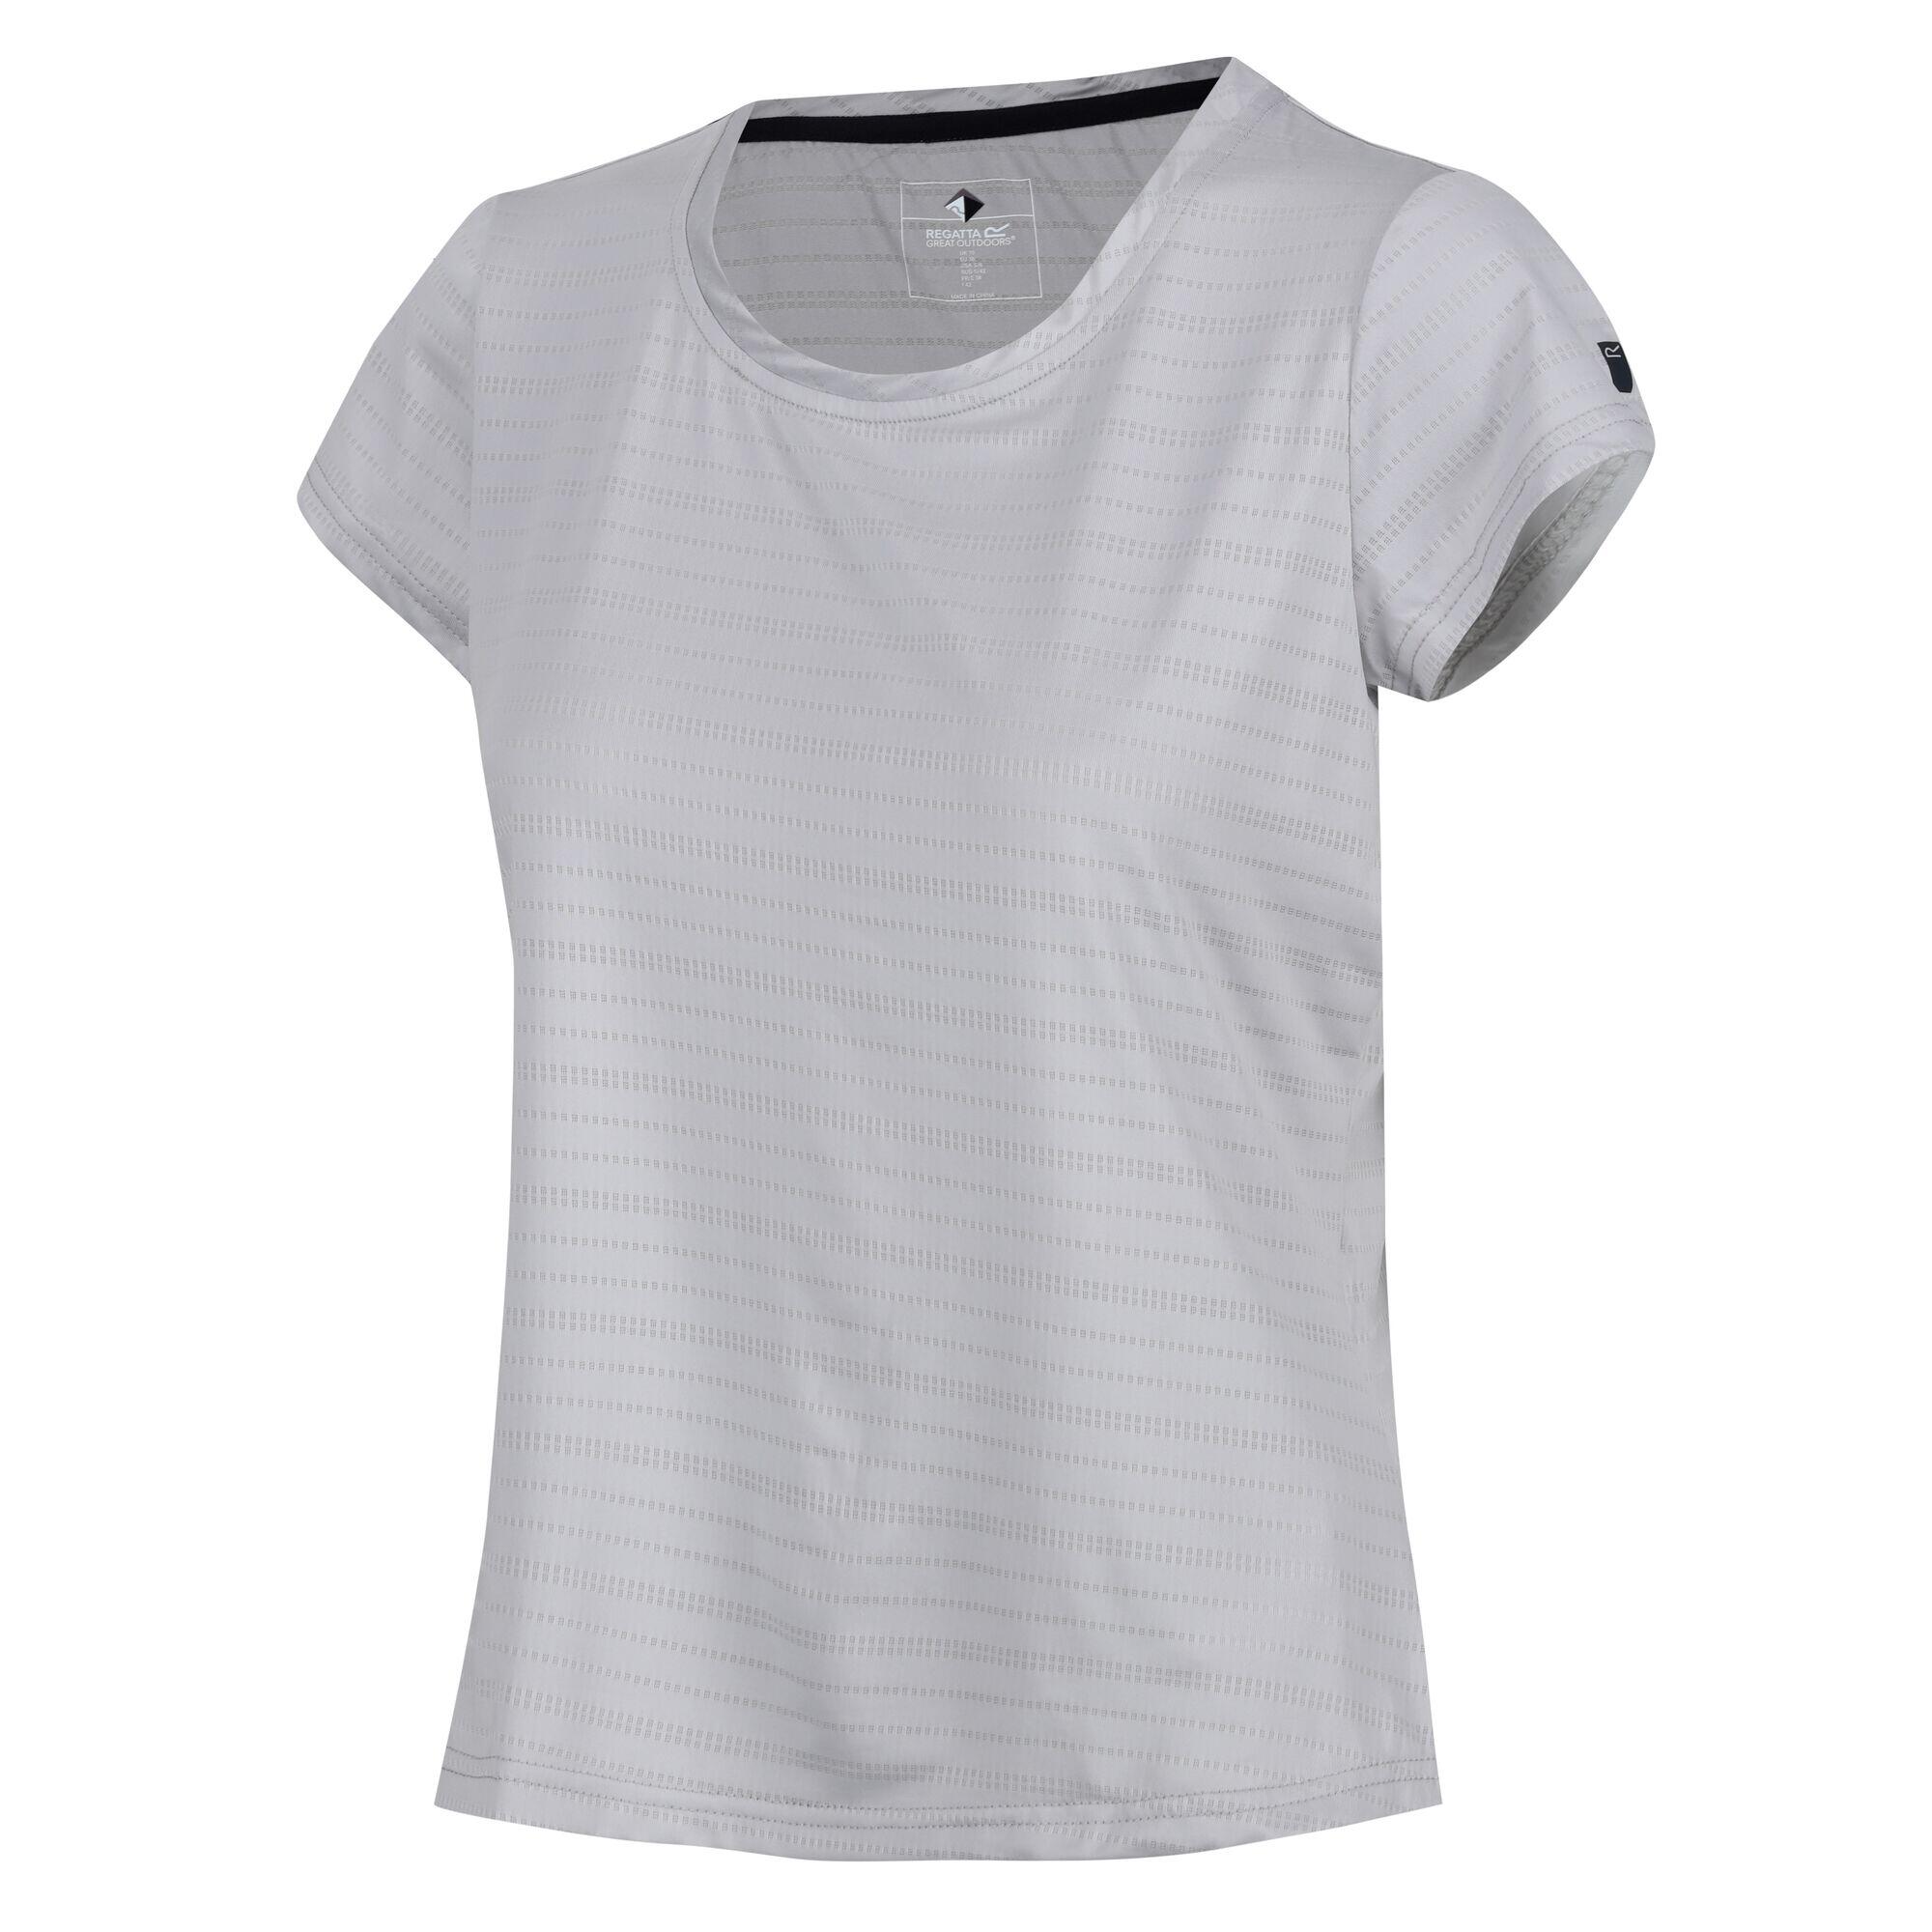 Limonite VI Women's Fitness Short Sleeve T-Shirt 4/7